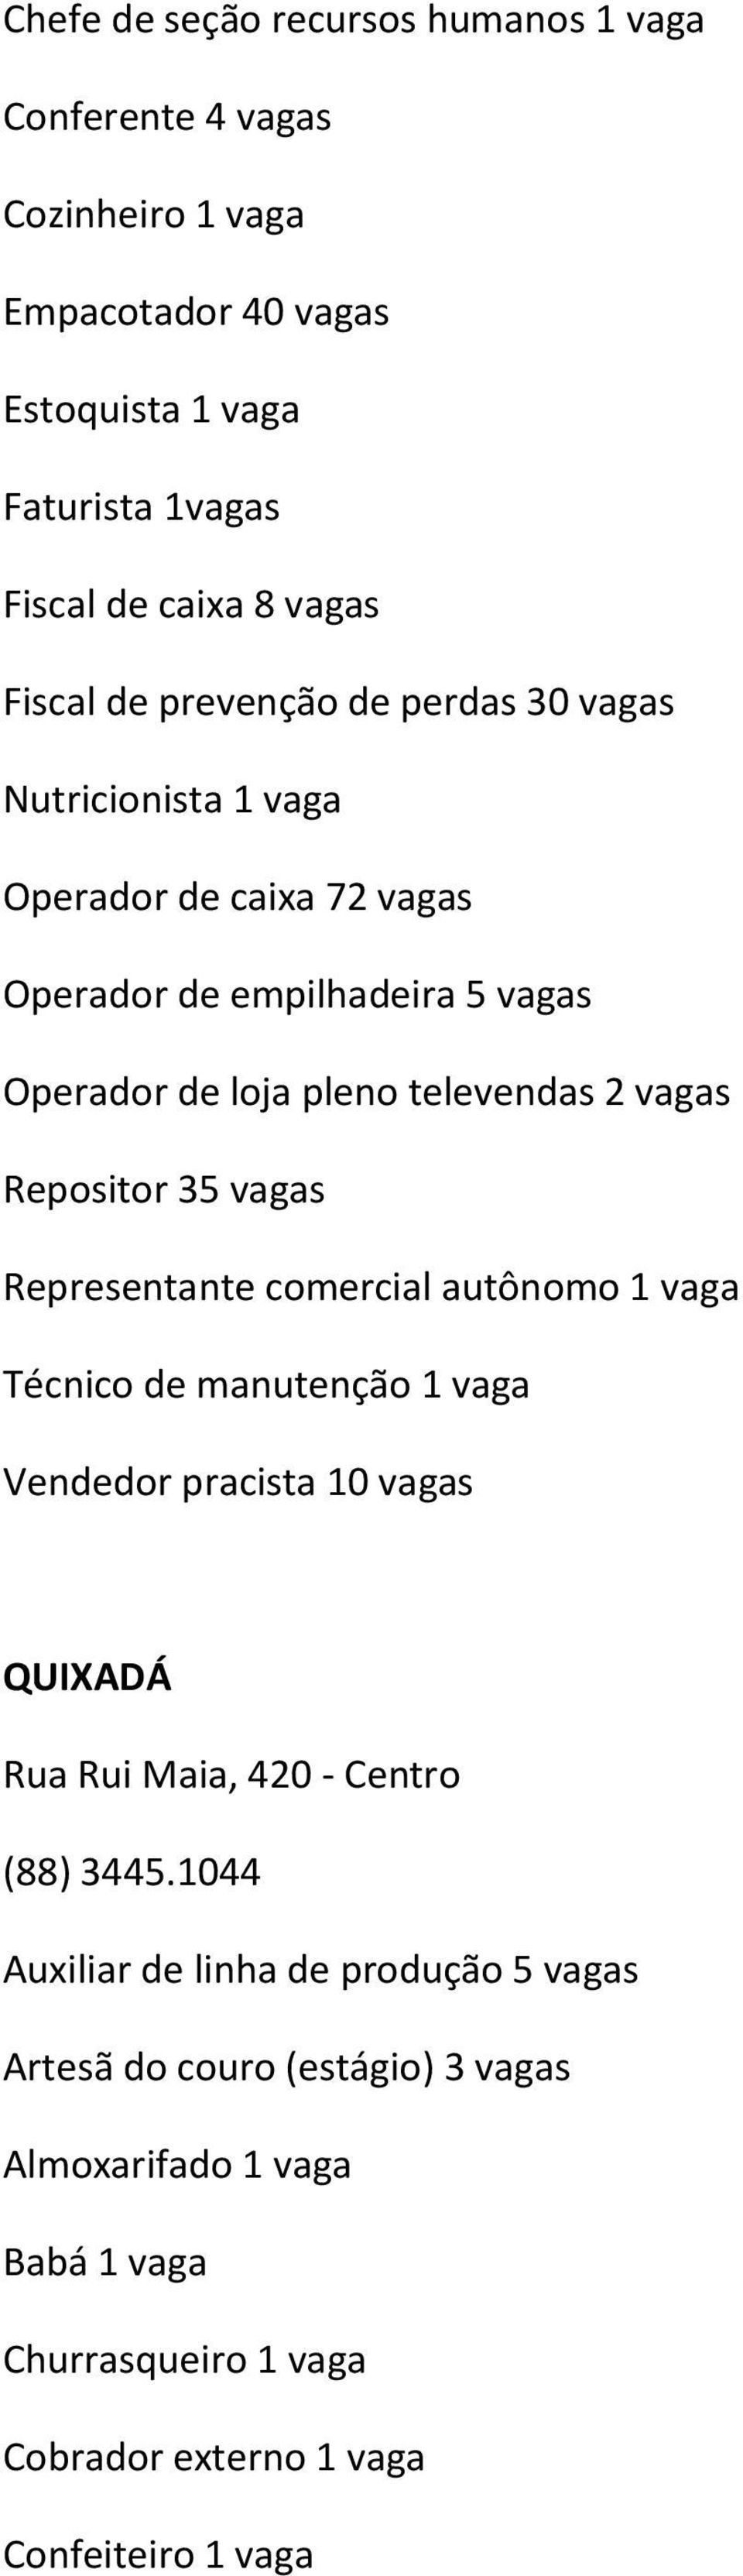 Repositor 35 vagas Representante comercial autônomo 1 vaga Técnico de manutenção 1 vaga Vendedor pracista 10 vagas QUIXADÁ Rua Rui Maia, 420 - Centro (88) 3445.